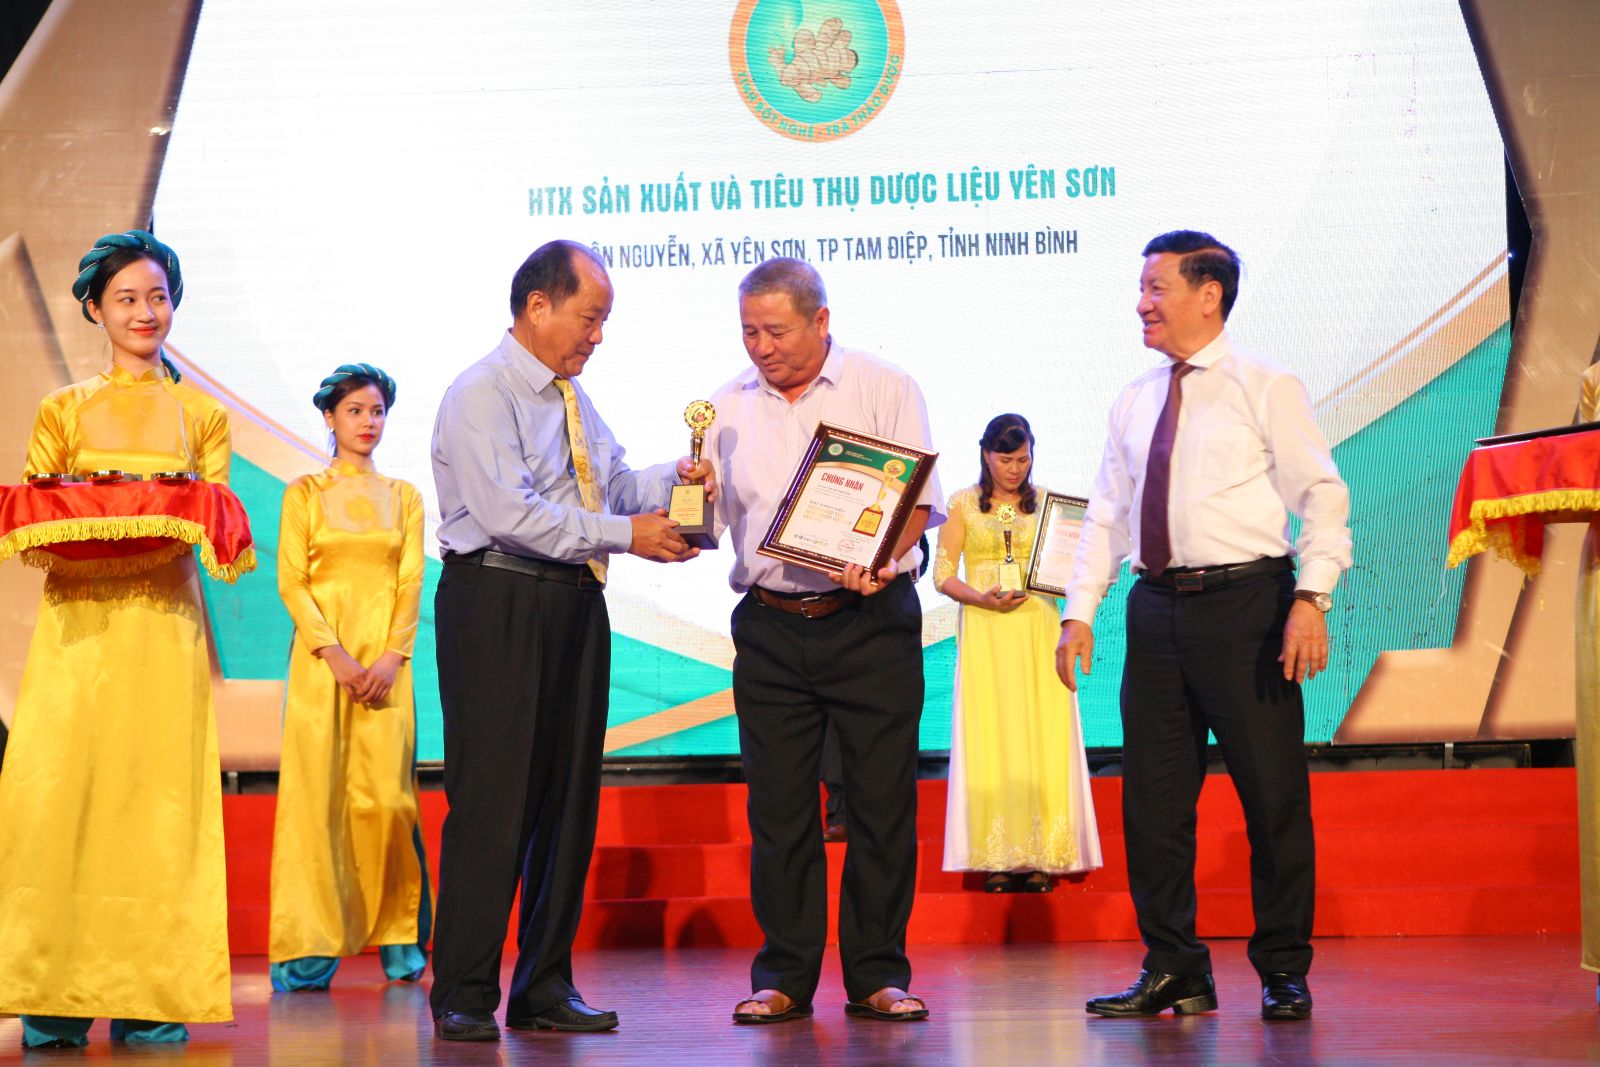 Hợp tác xã sản xuất và tiêu thụ Dược liệu Yên Sơn được vinh danh tại Chương trình “Thương hiệu Vàng nông nghiệp Việt Nam